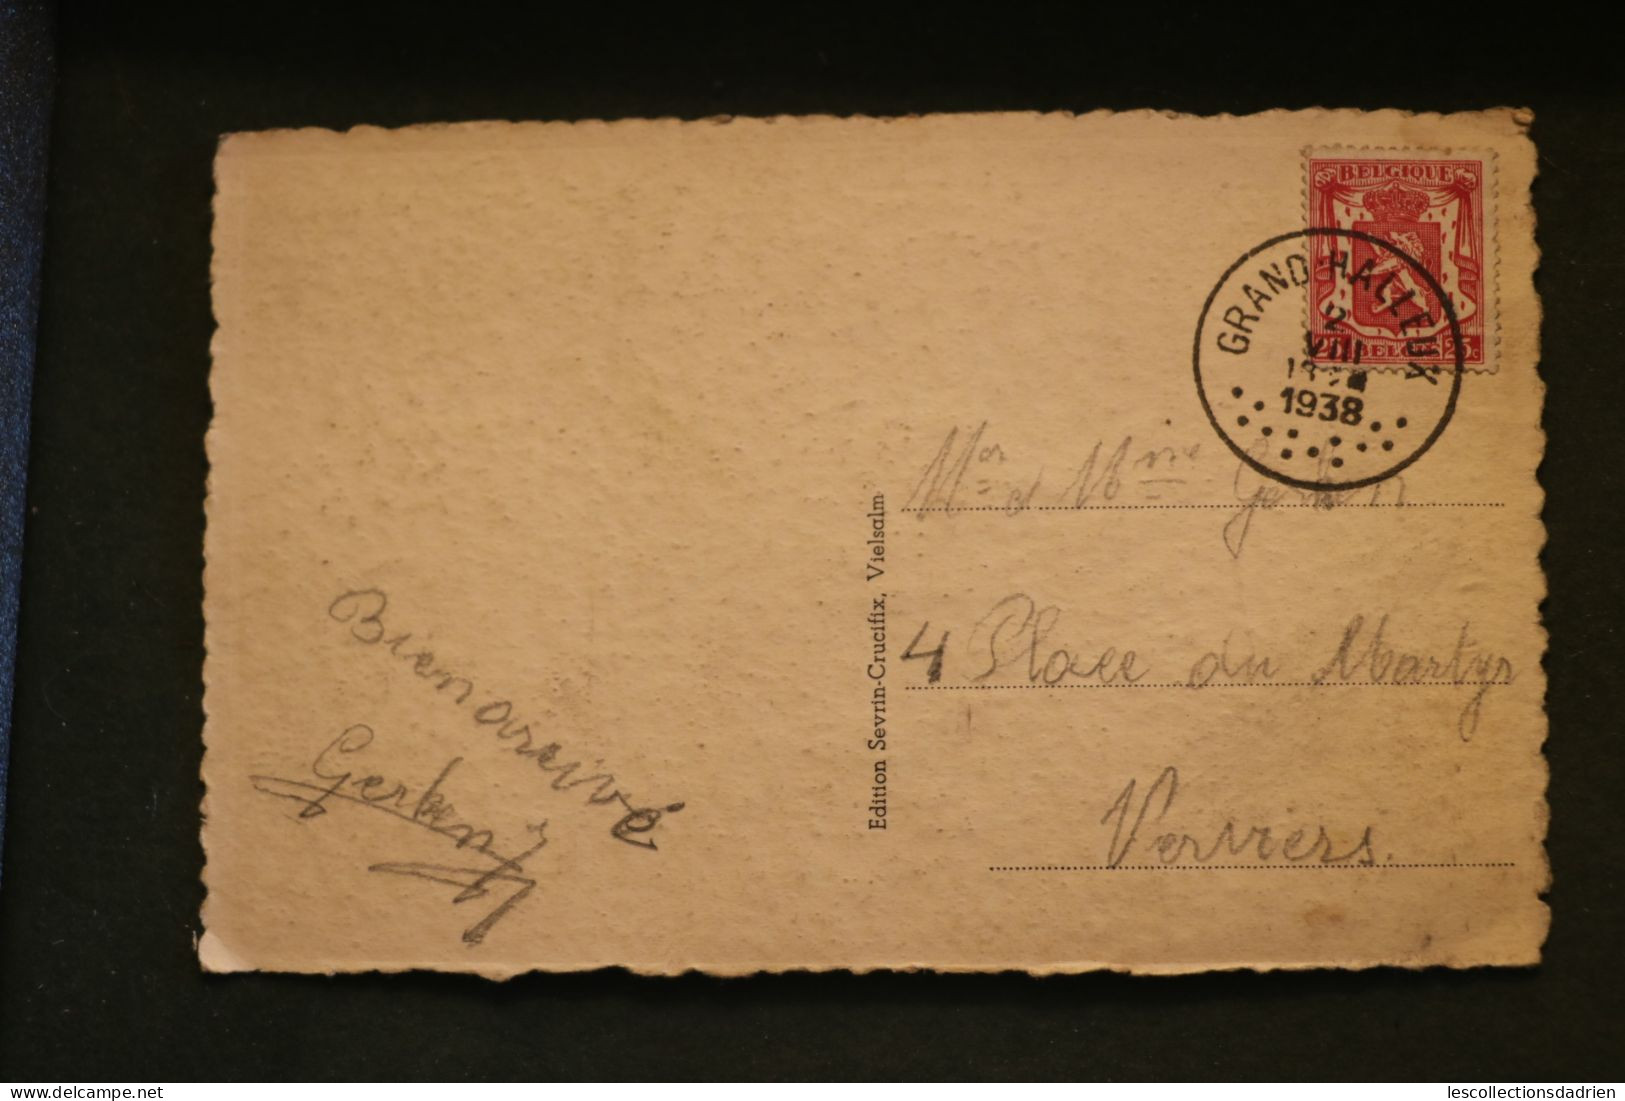 Carte postale ancienne Vielsalm Types d'ardennais oblitération de Grand Halleux 1938